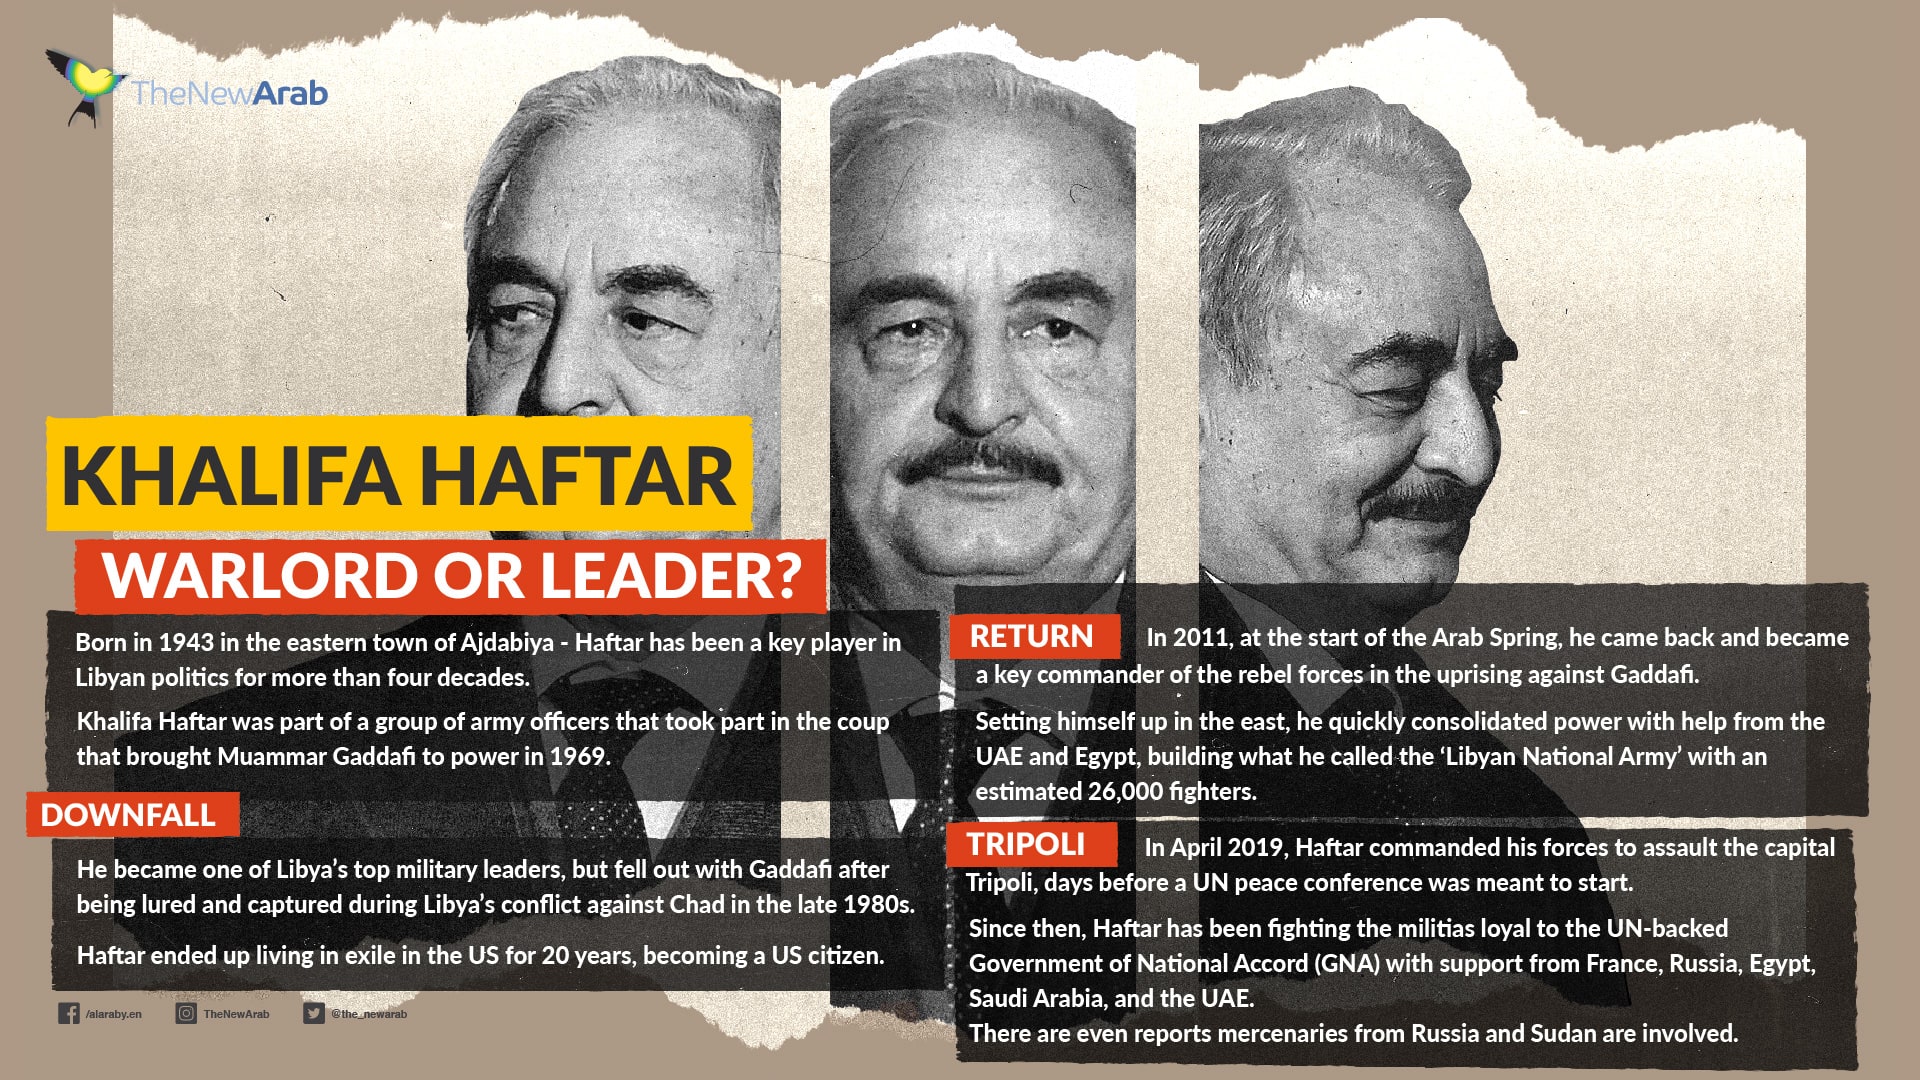 Khalifa Haftar: Warlord or leader?